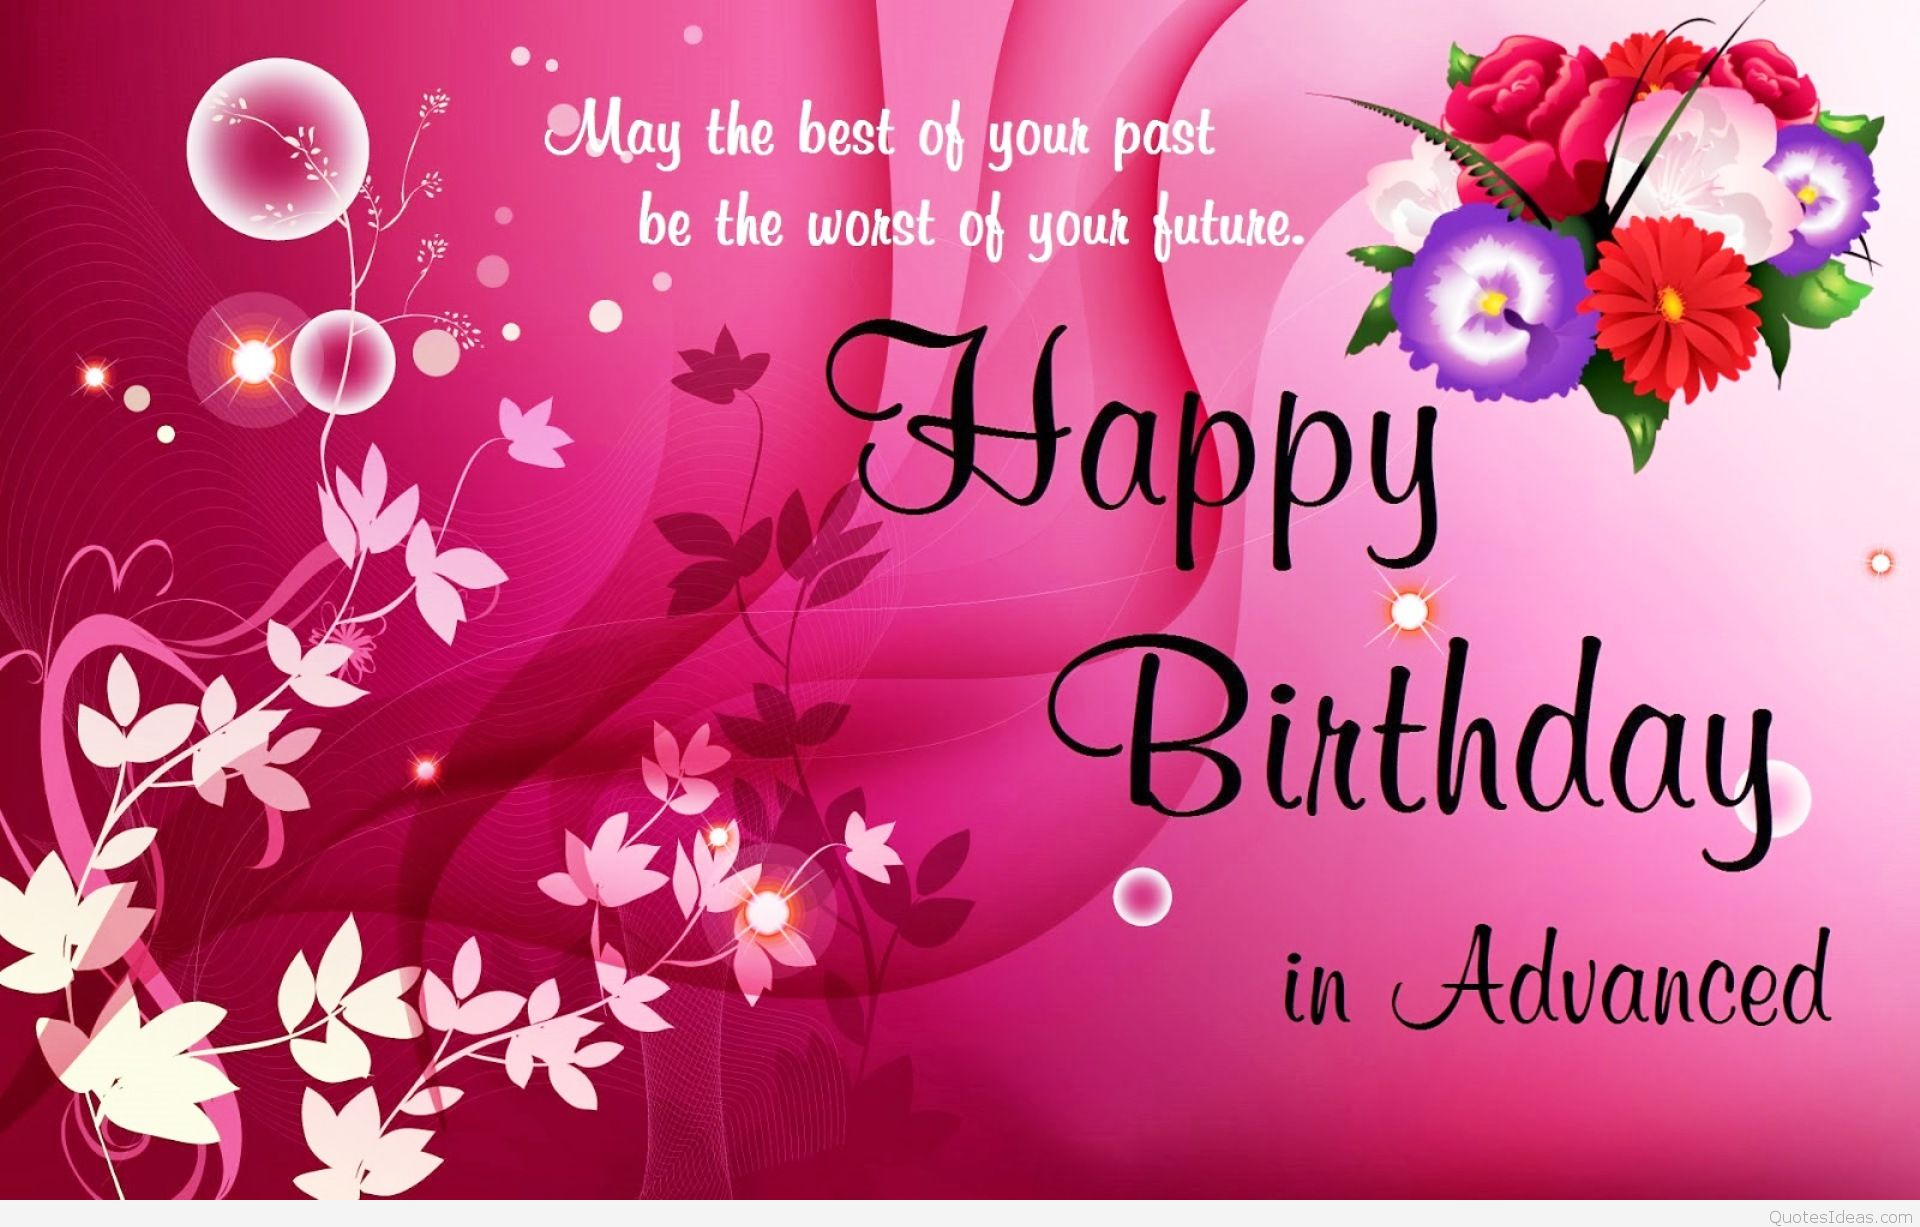 papel tapiz de cumpleaños con citas,texto,rosado,fuente,tarjeta de felicitación,saludo